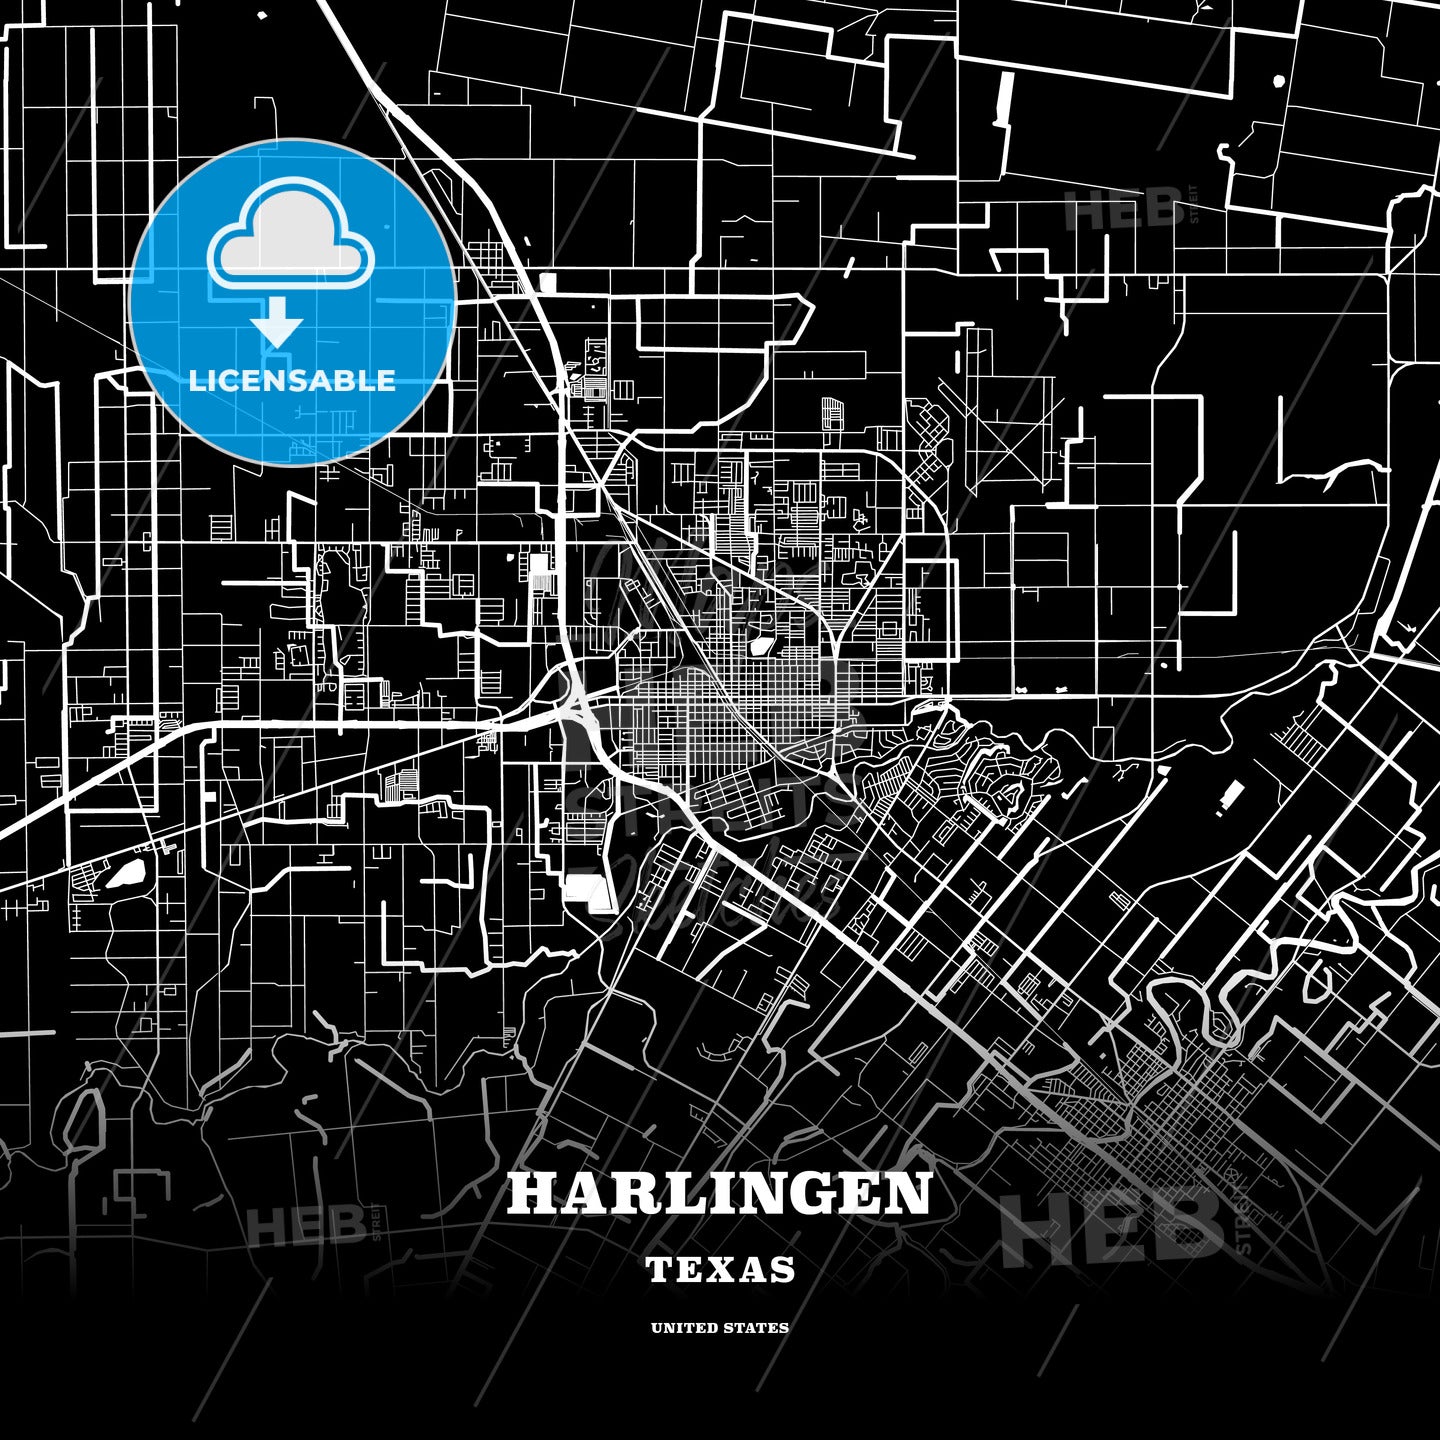 Harlingen, Texas, USA map